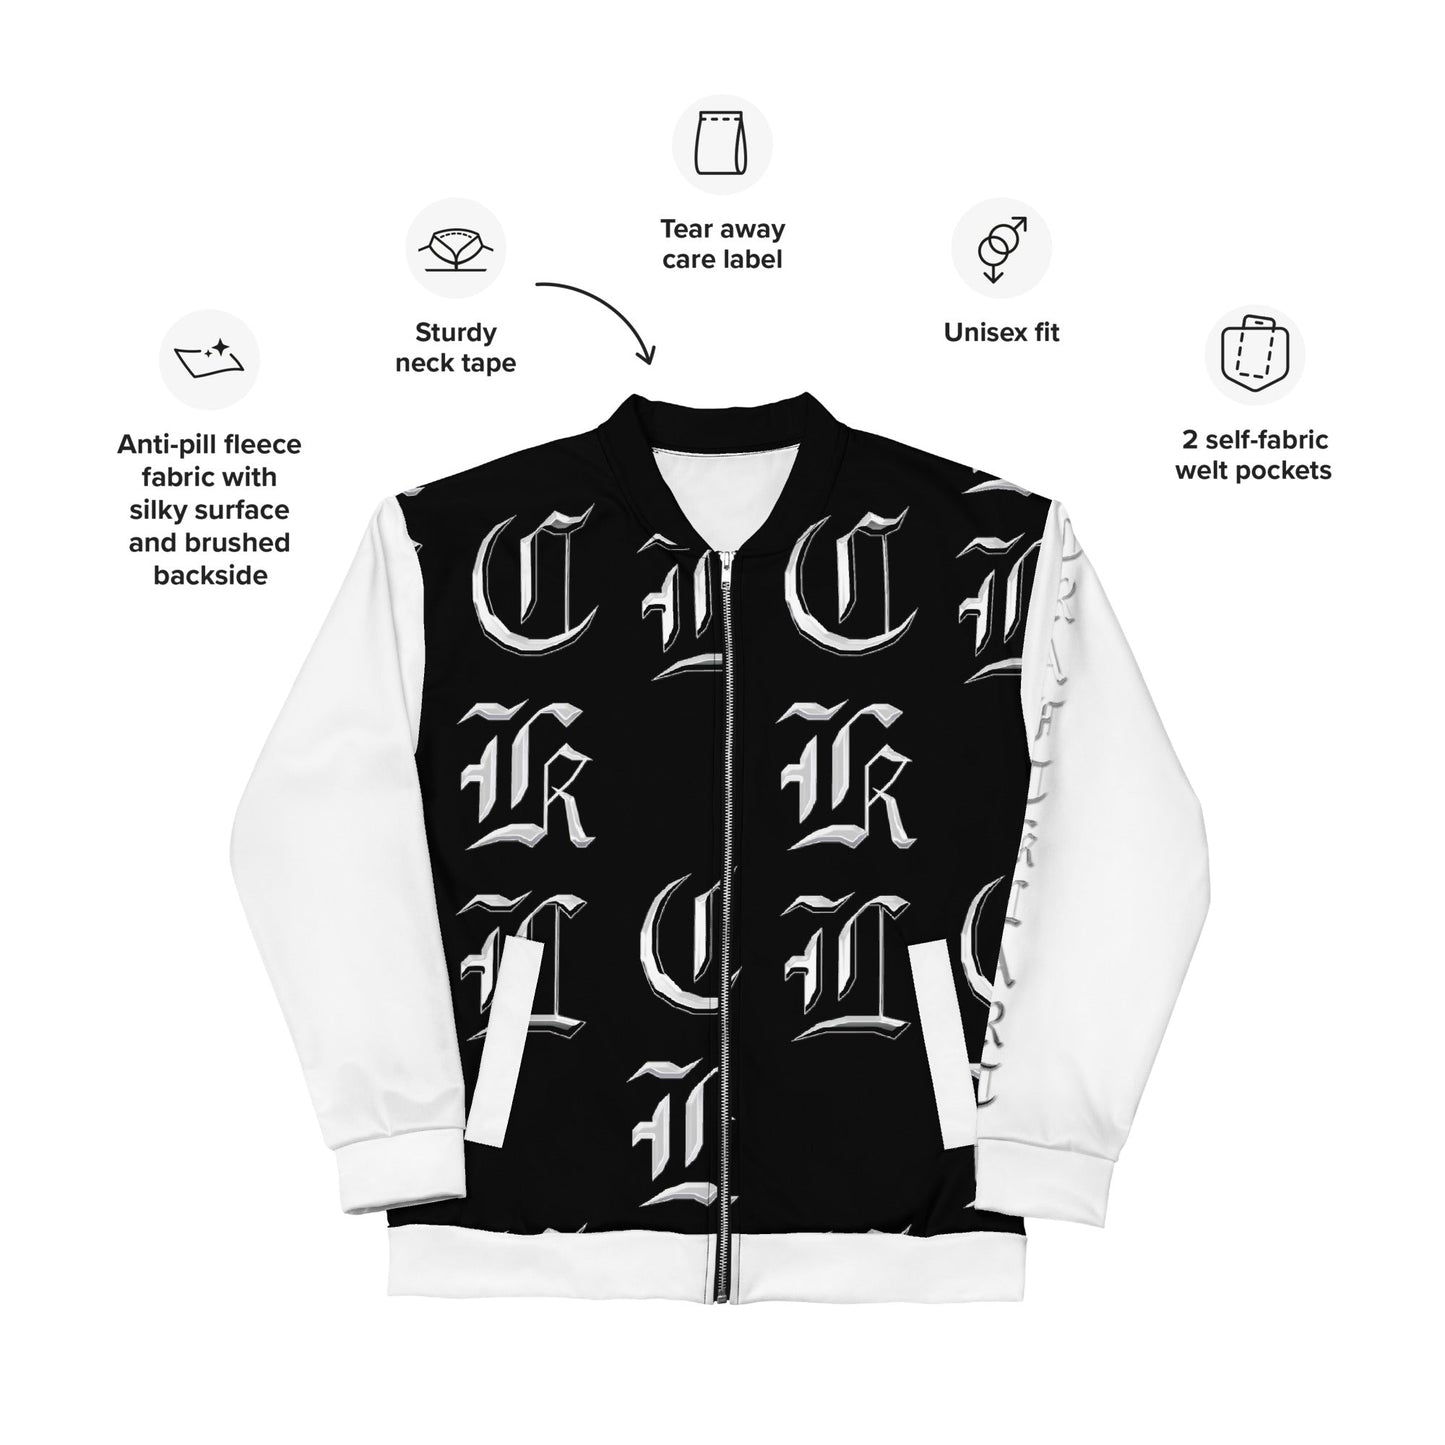 CKL Bomber Jacket (White Sleeve) - Premium Coats & Jackets from Craftklart - Just $48.0! Shop now at Craftklart